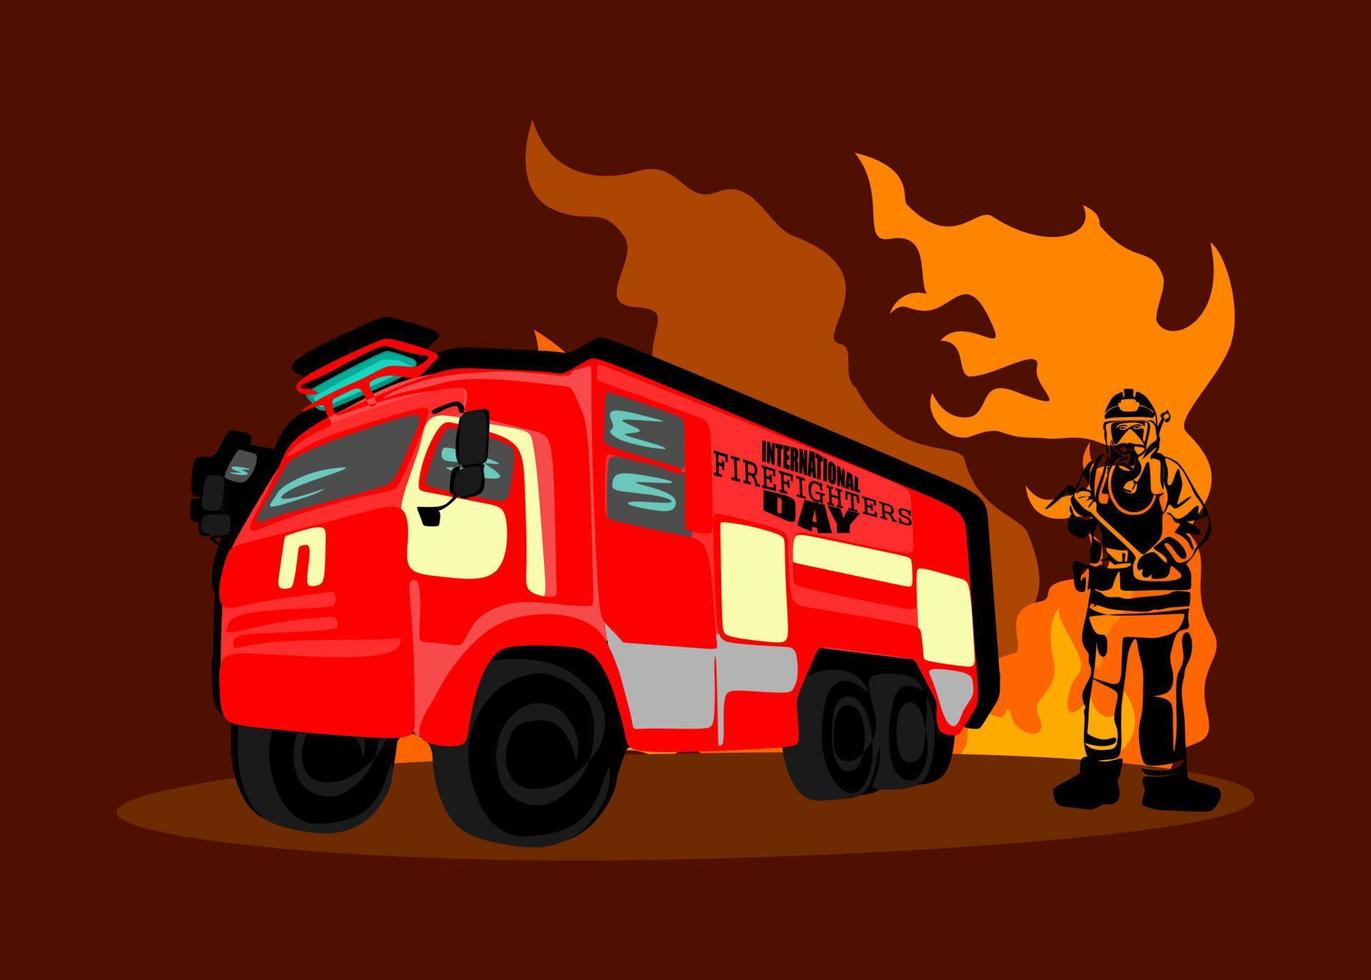 projeto de conceito do dia internacional dos bombeiros. ilustração vetorial de silhueta de bombeiro, como um banner, pôster ou modelo para o dia internacional dos bombeiros com letras, fogo e chamas. vetor